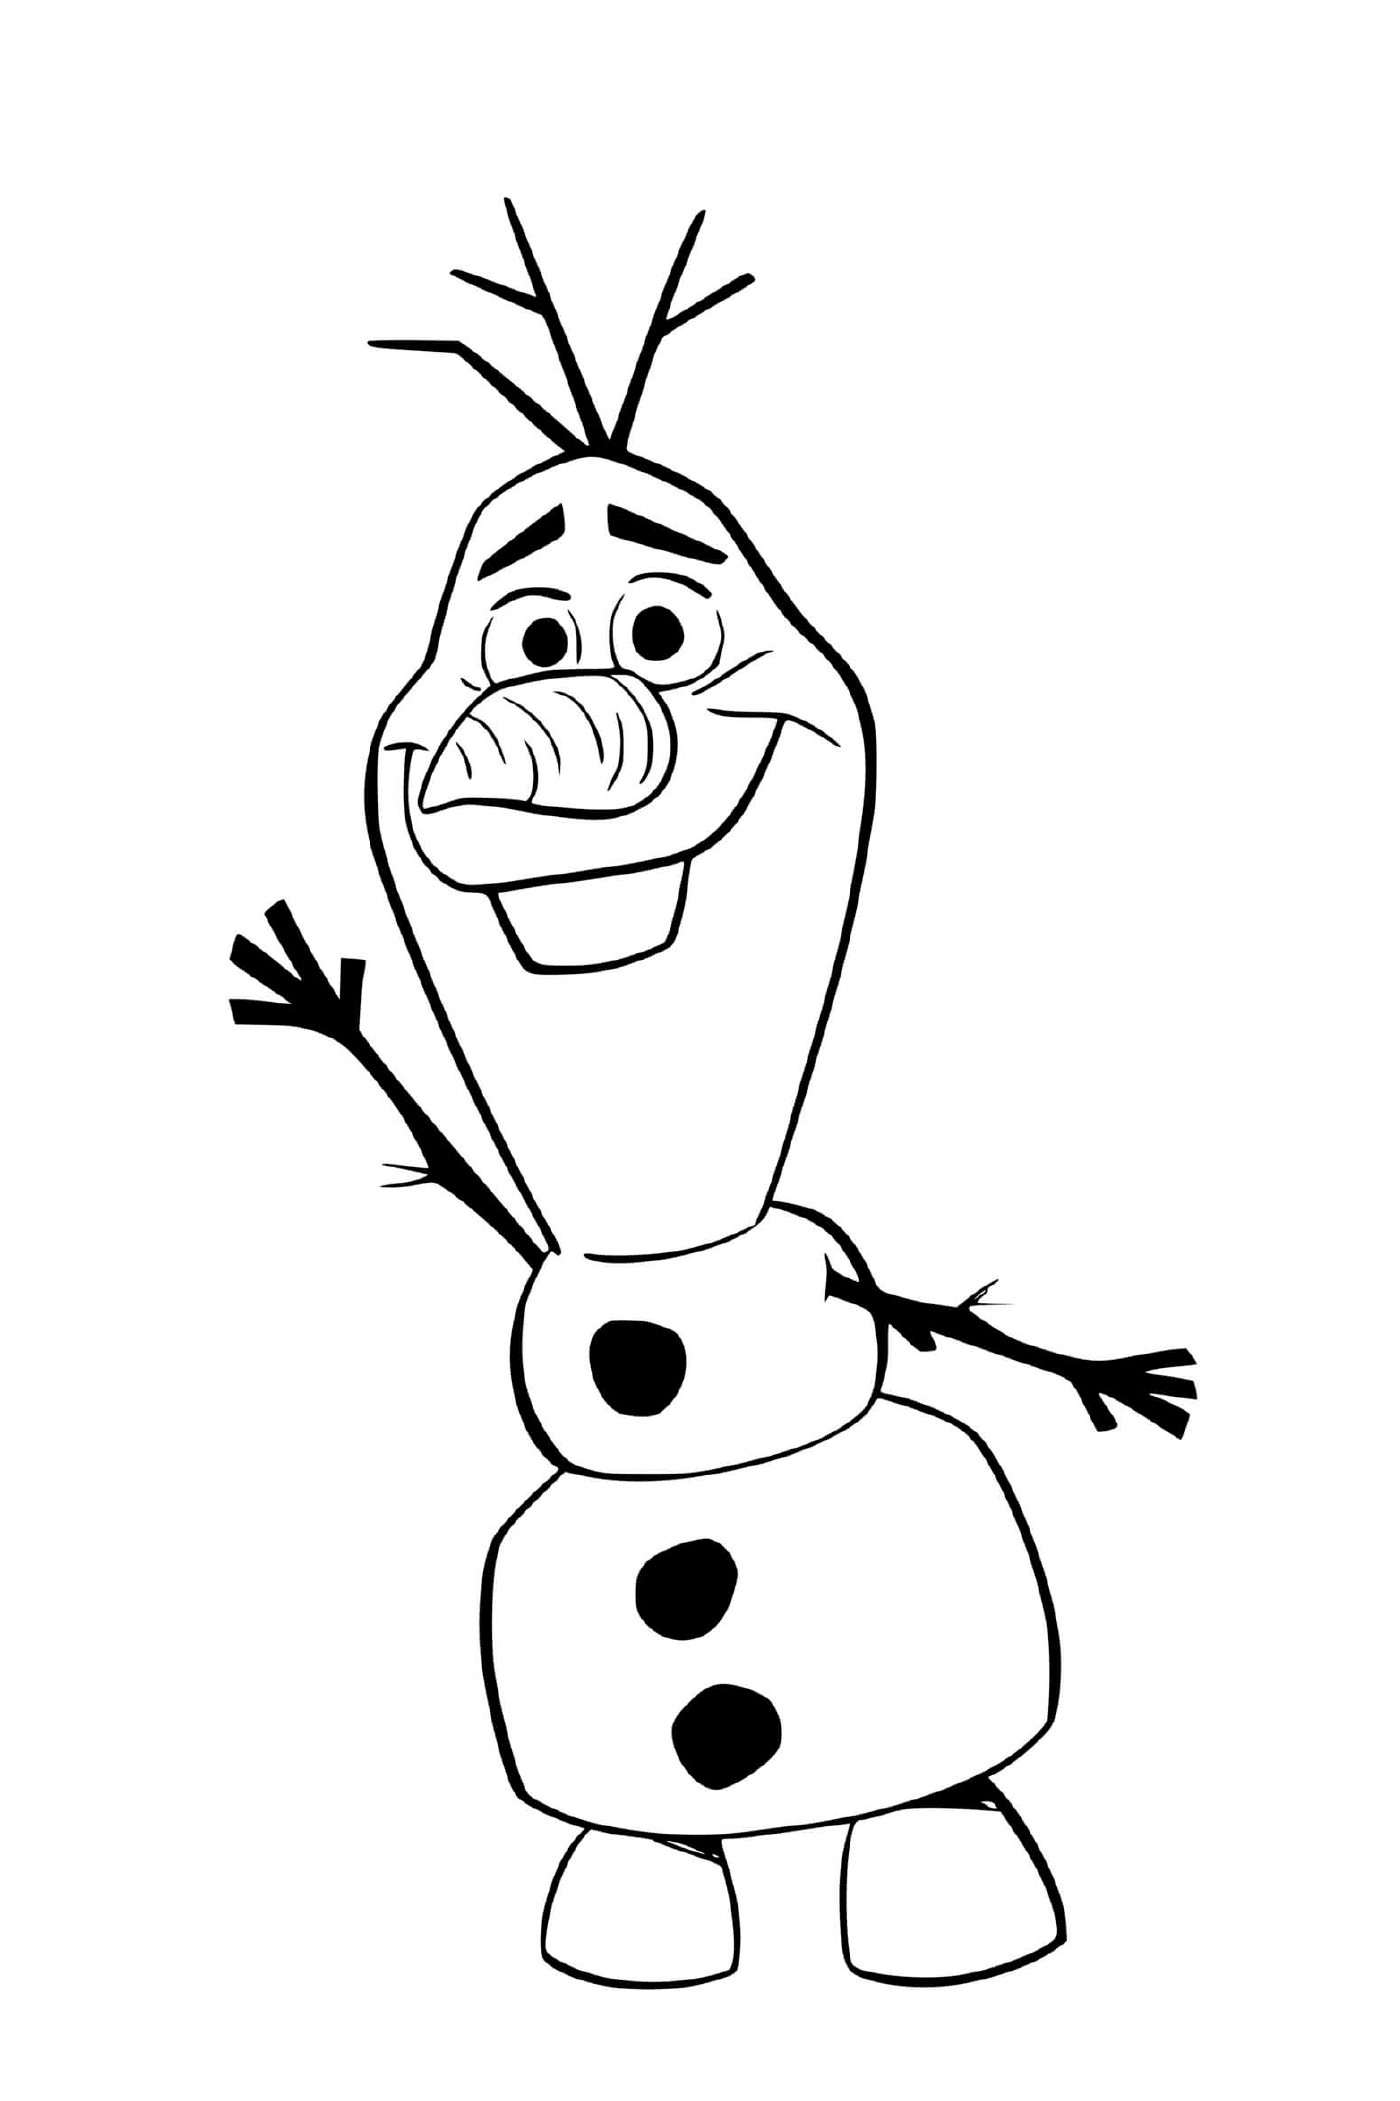  Olaf en el reino de Arendelle 